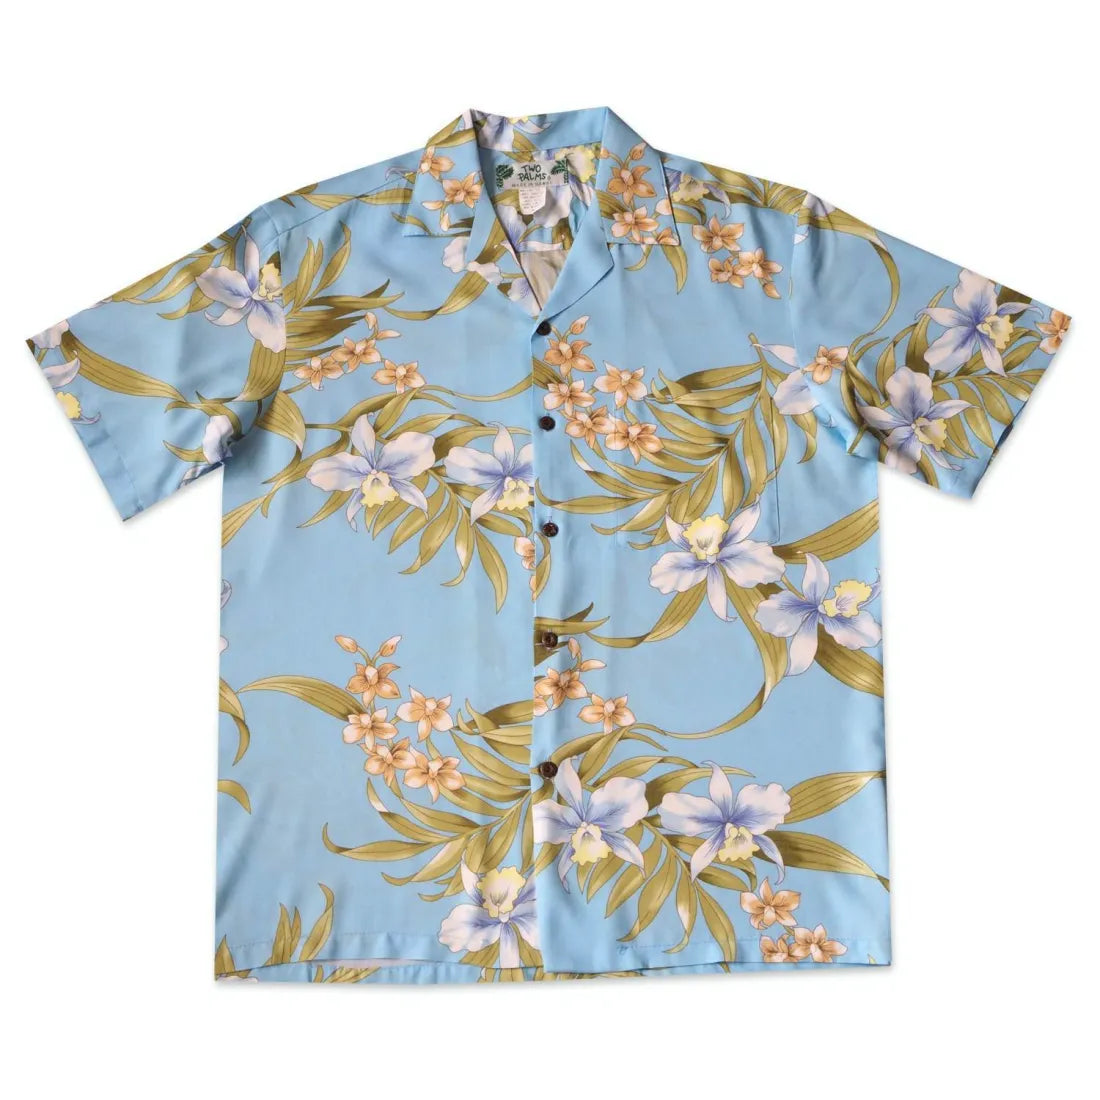 Bamboo Orchid Baby Blue Hawaiian Rayon Shirt - Made In Hawaii